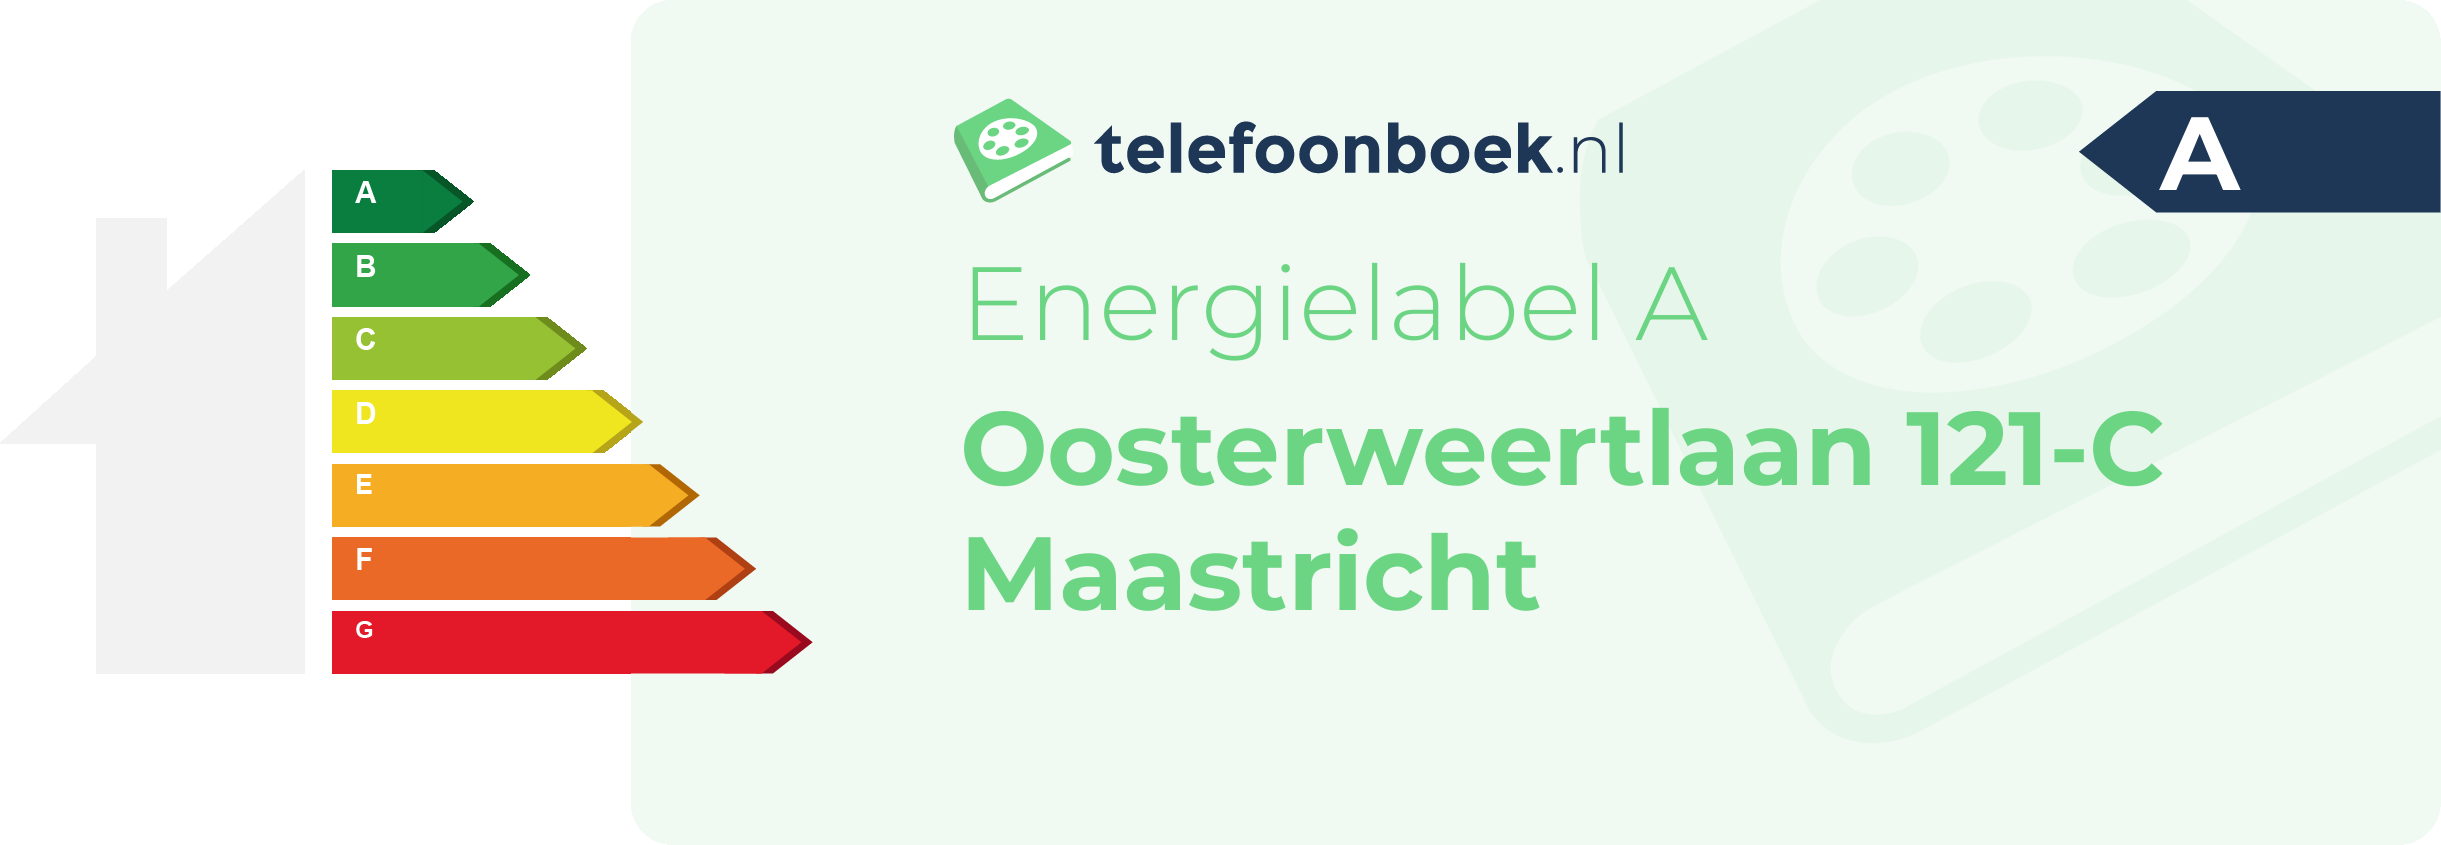 Energielabel Oosterweertlaan 121-C Maastricht